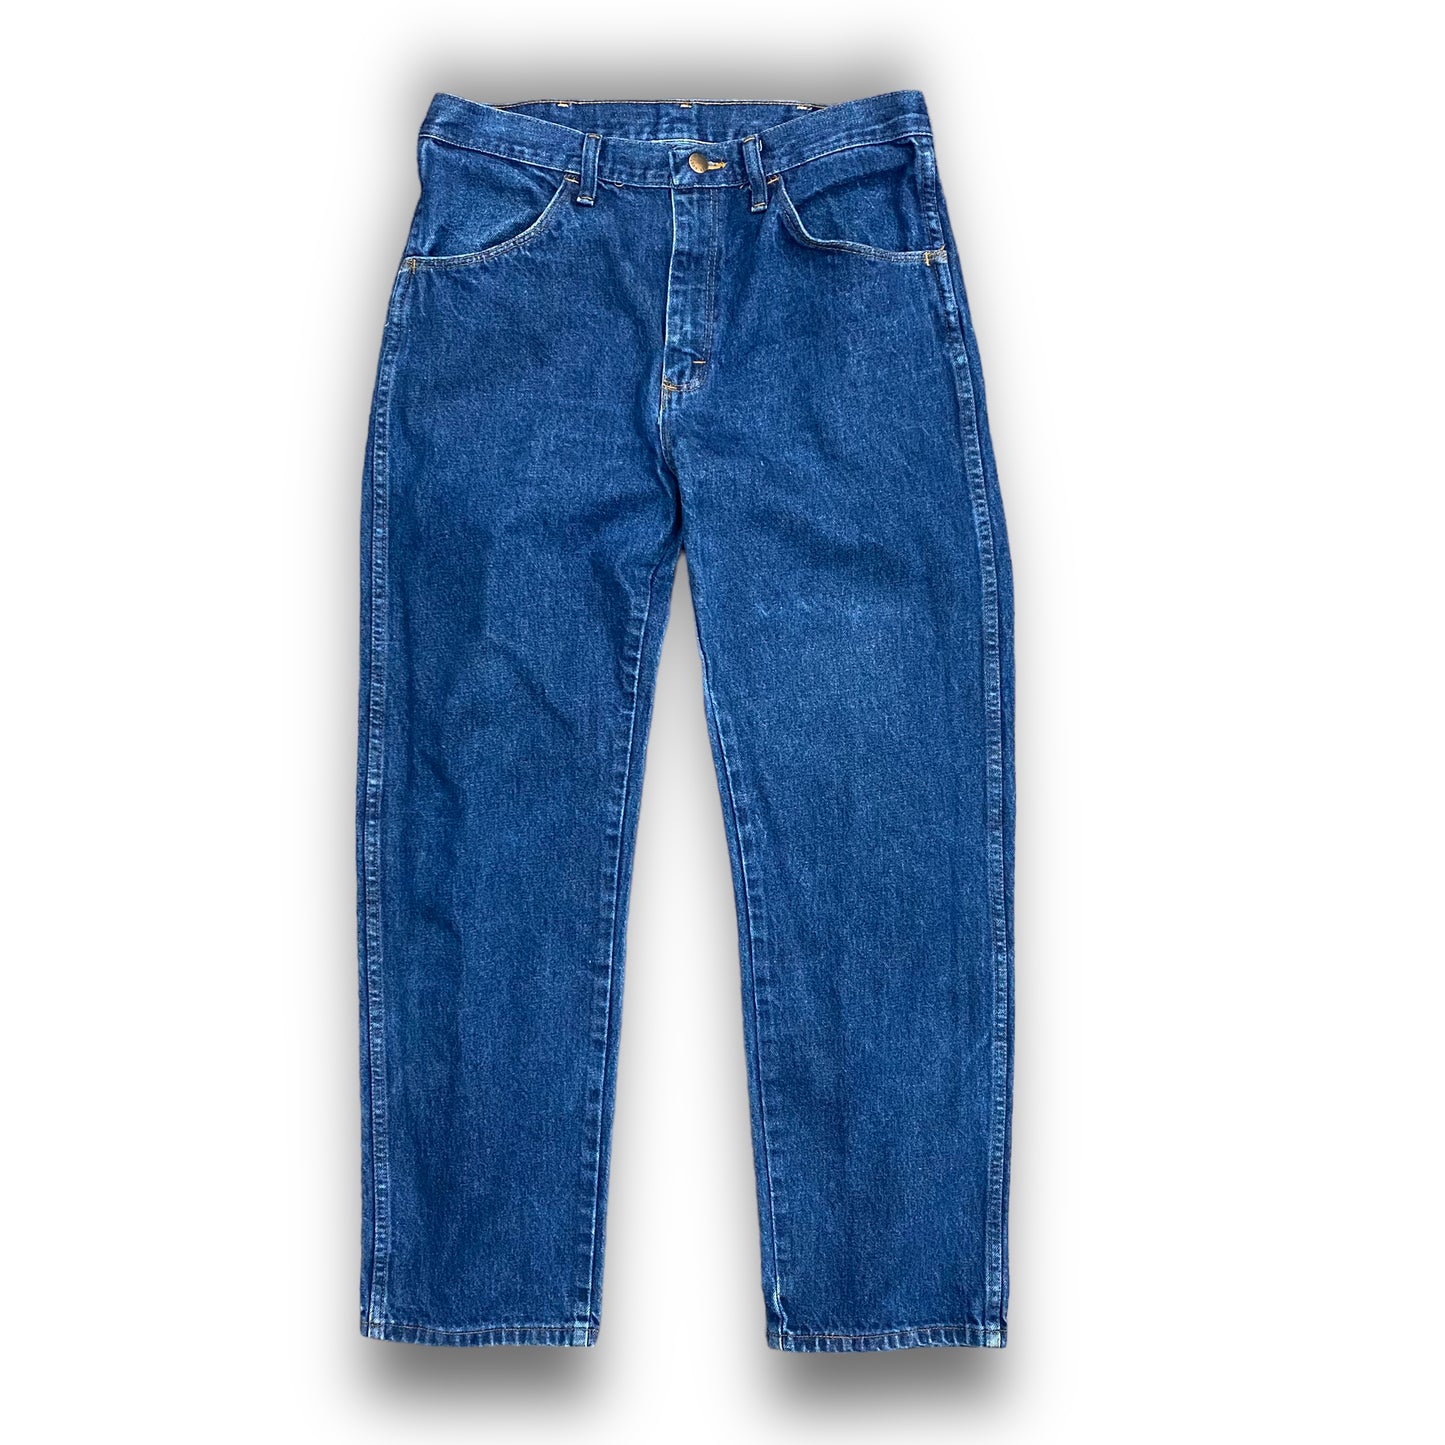 Y2K Rustler Dark Wash Denim Jeans - 32"x29"